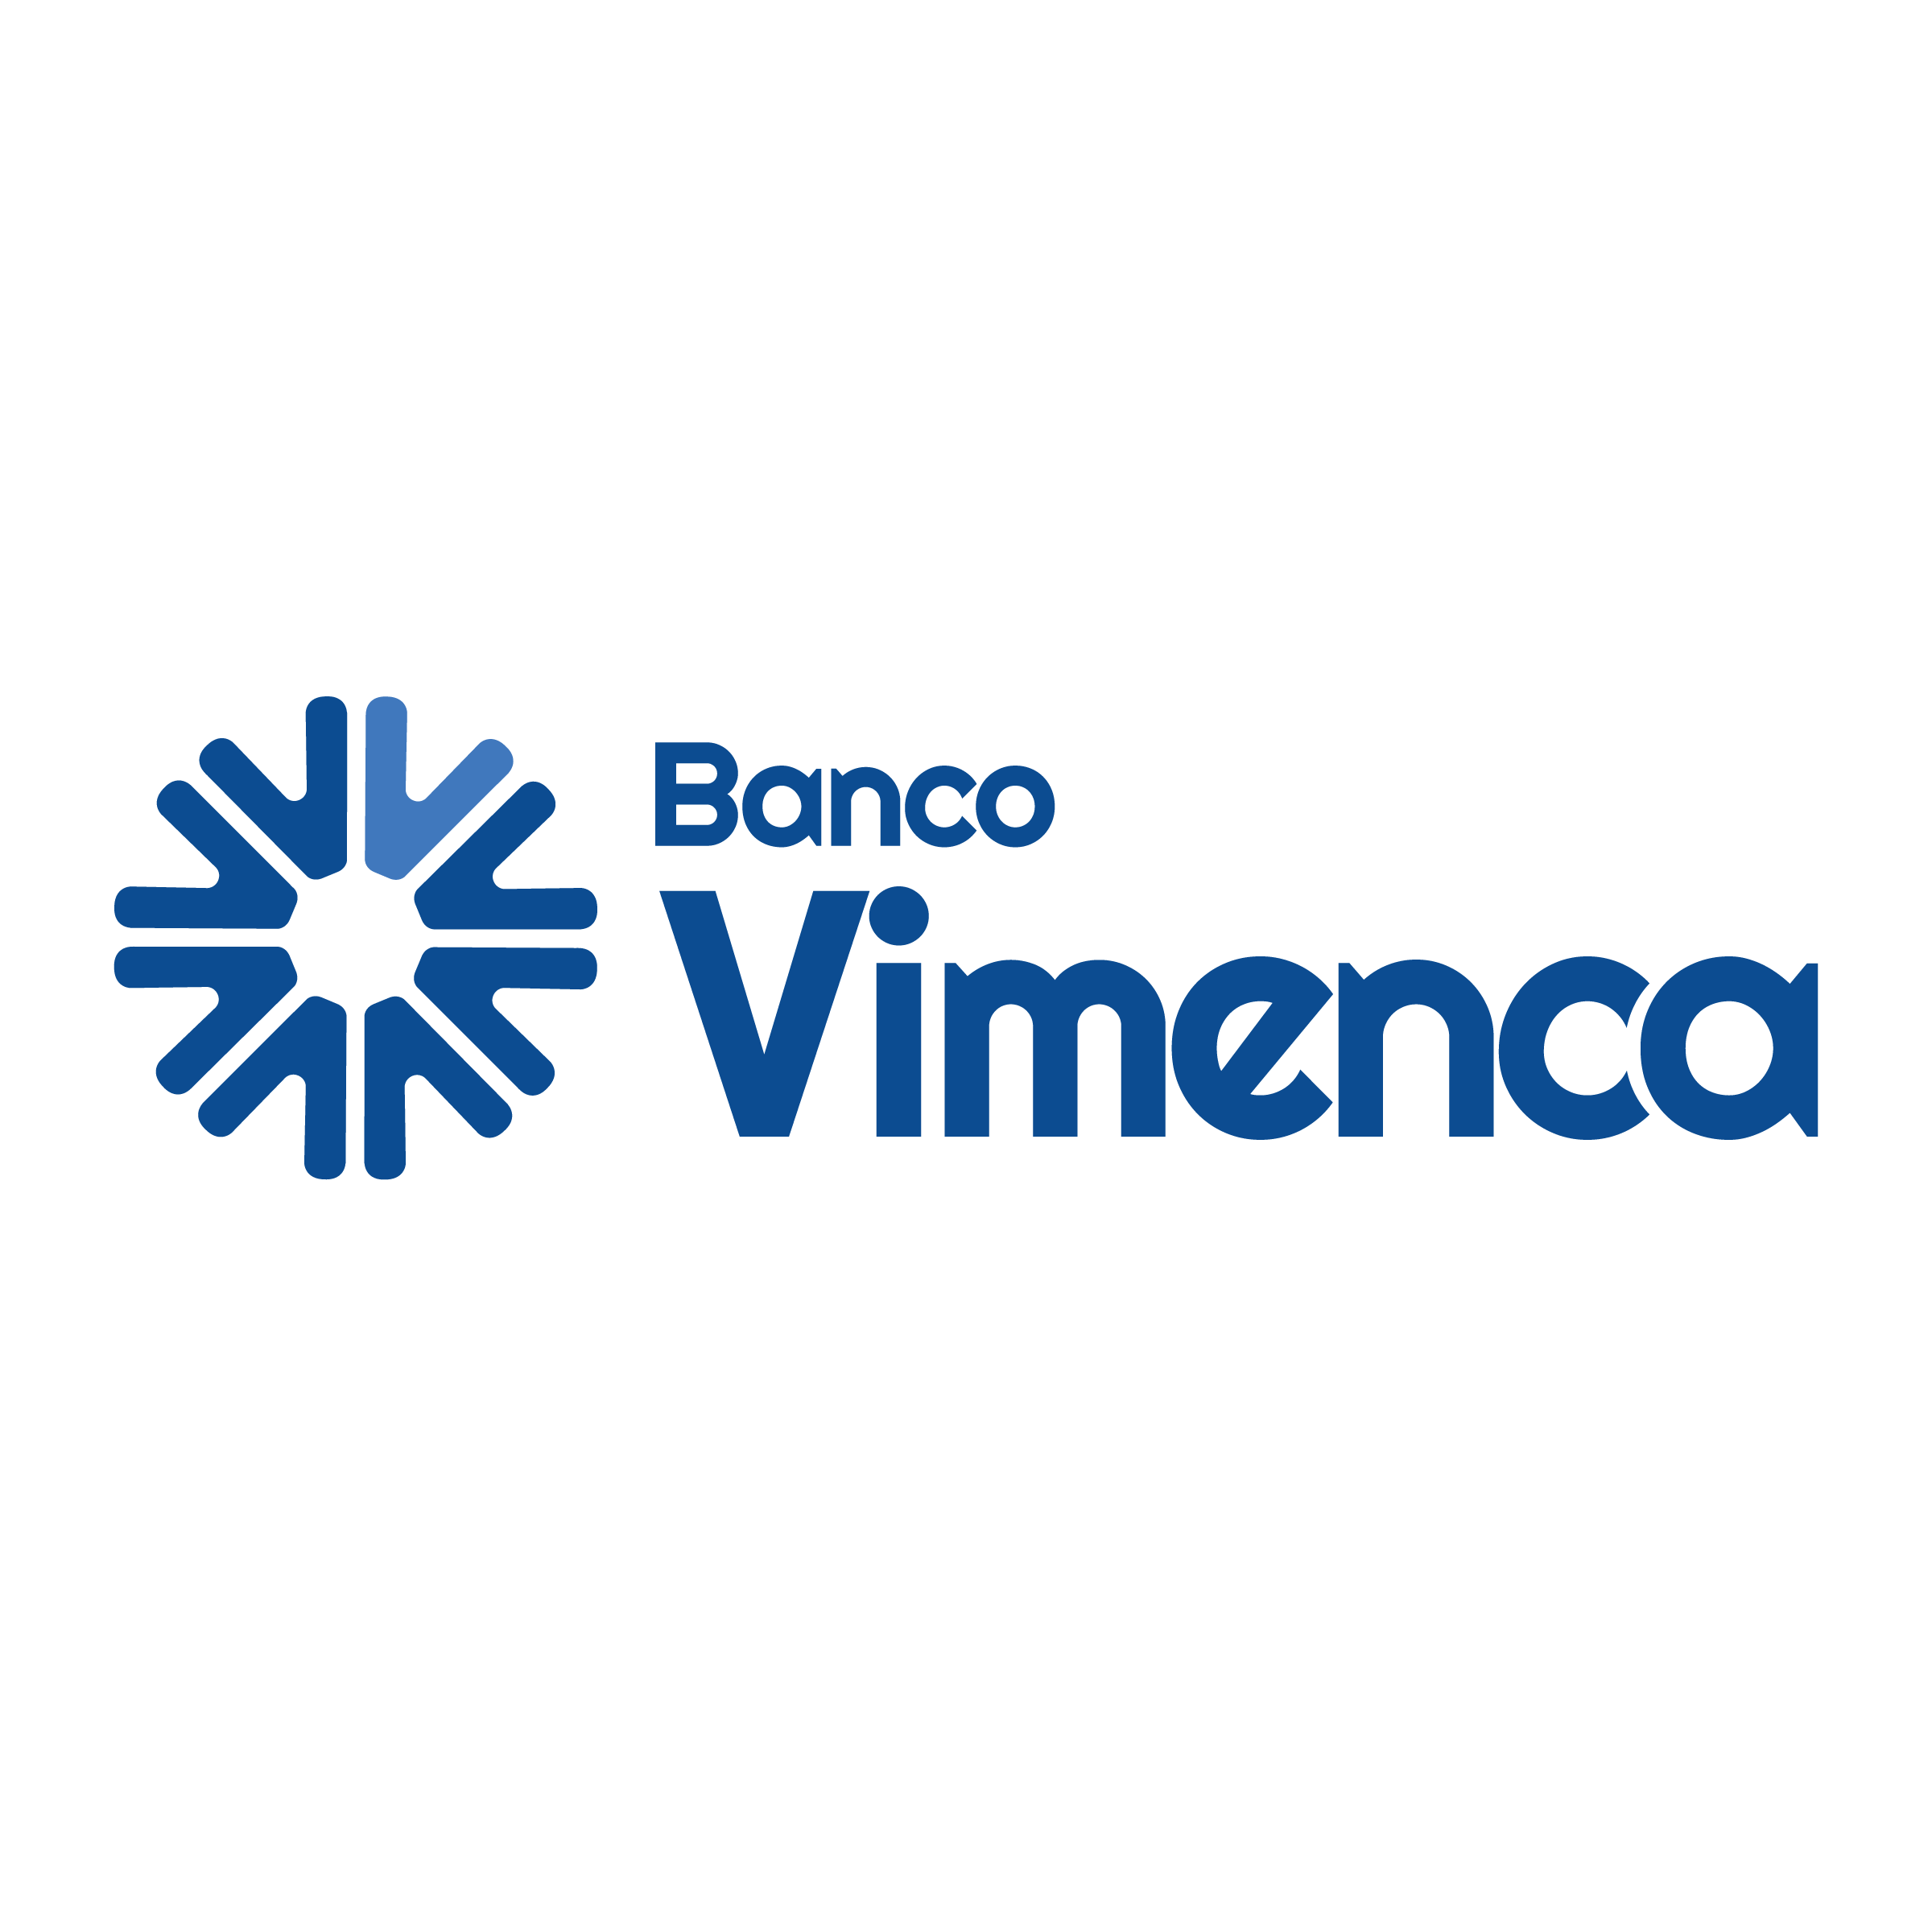 Banco Vimenca